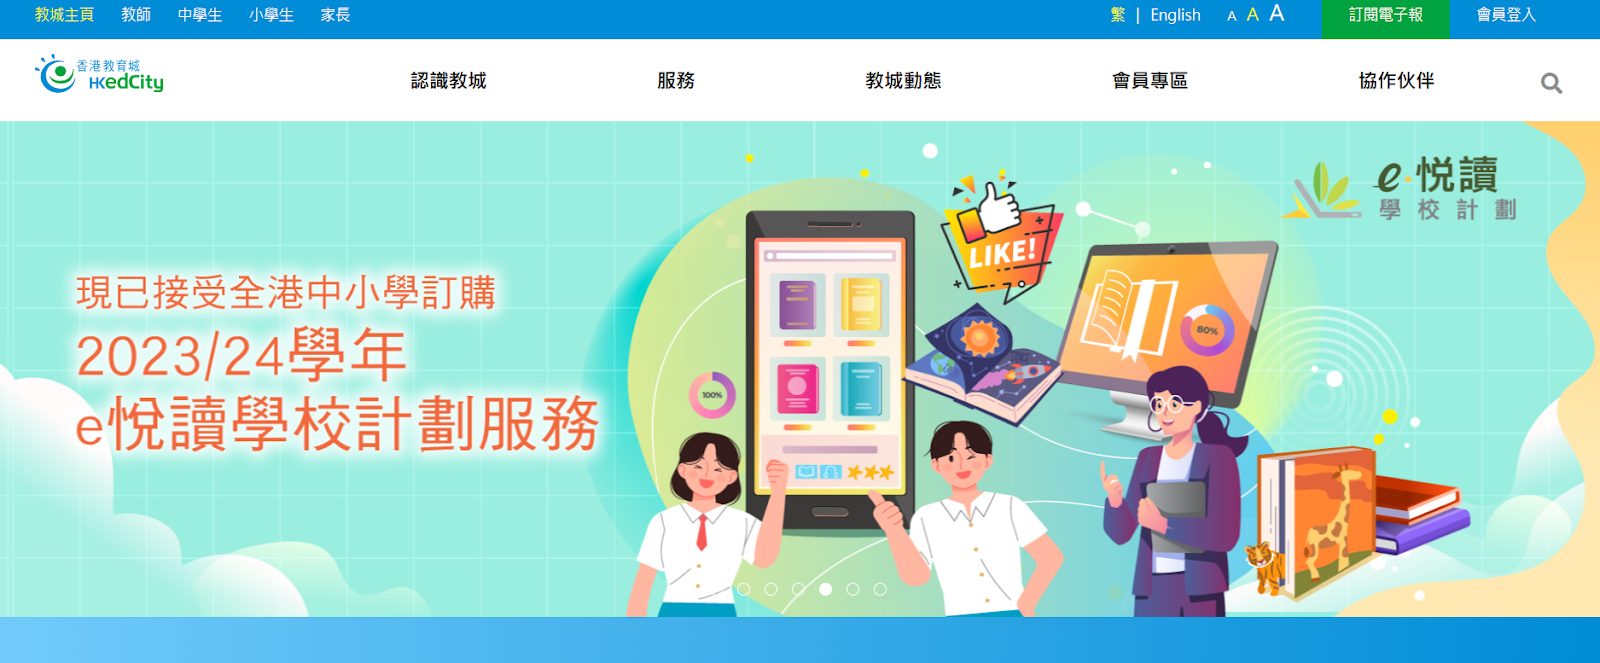 香港教育城 線上學習網站 中文 中文學習 家長 學生 小孩 香港 學習 教育 網絡資源 學習資源